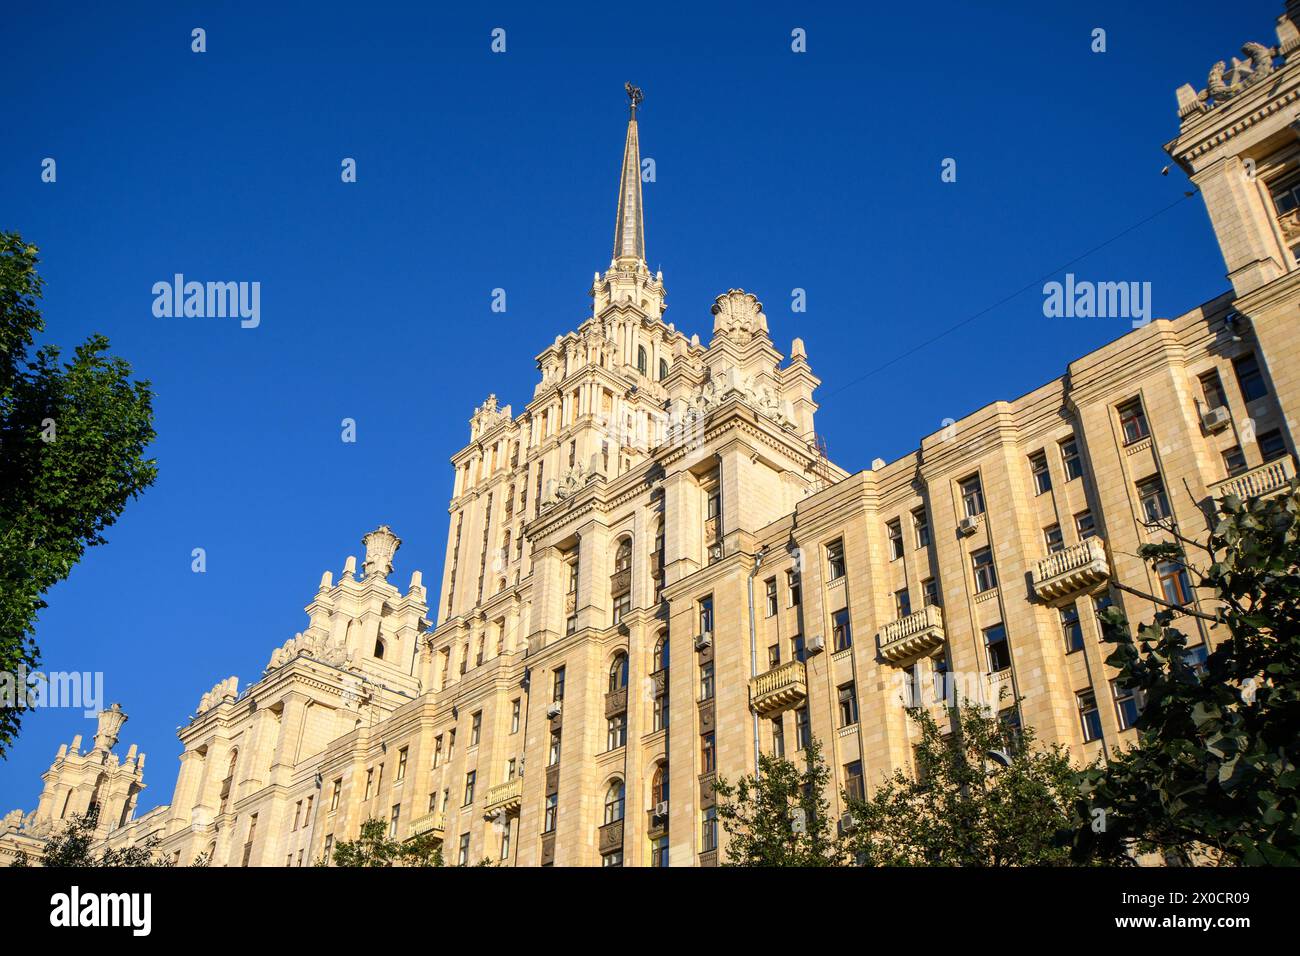 Moscú, Rusia - 15 Ago 2017: La icónica arquitectura disfruta de la luz del sol de la hora dorada, mostrando una mezcla de historia y arte contra el fondo Foto de stock